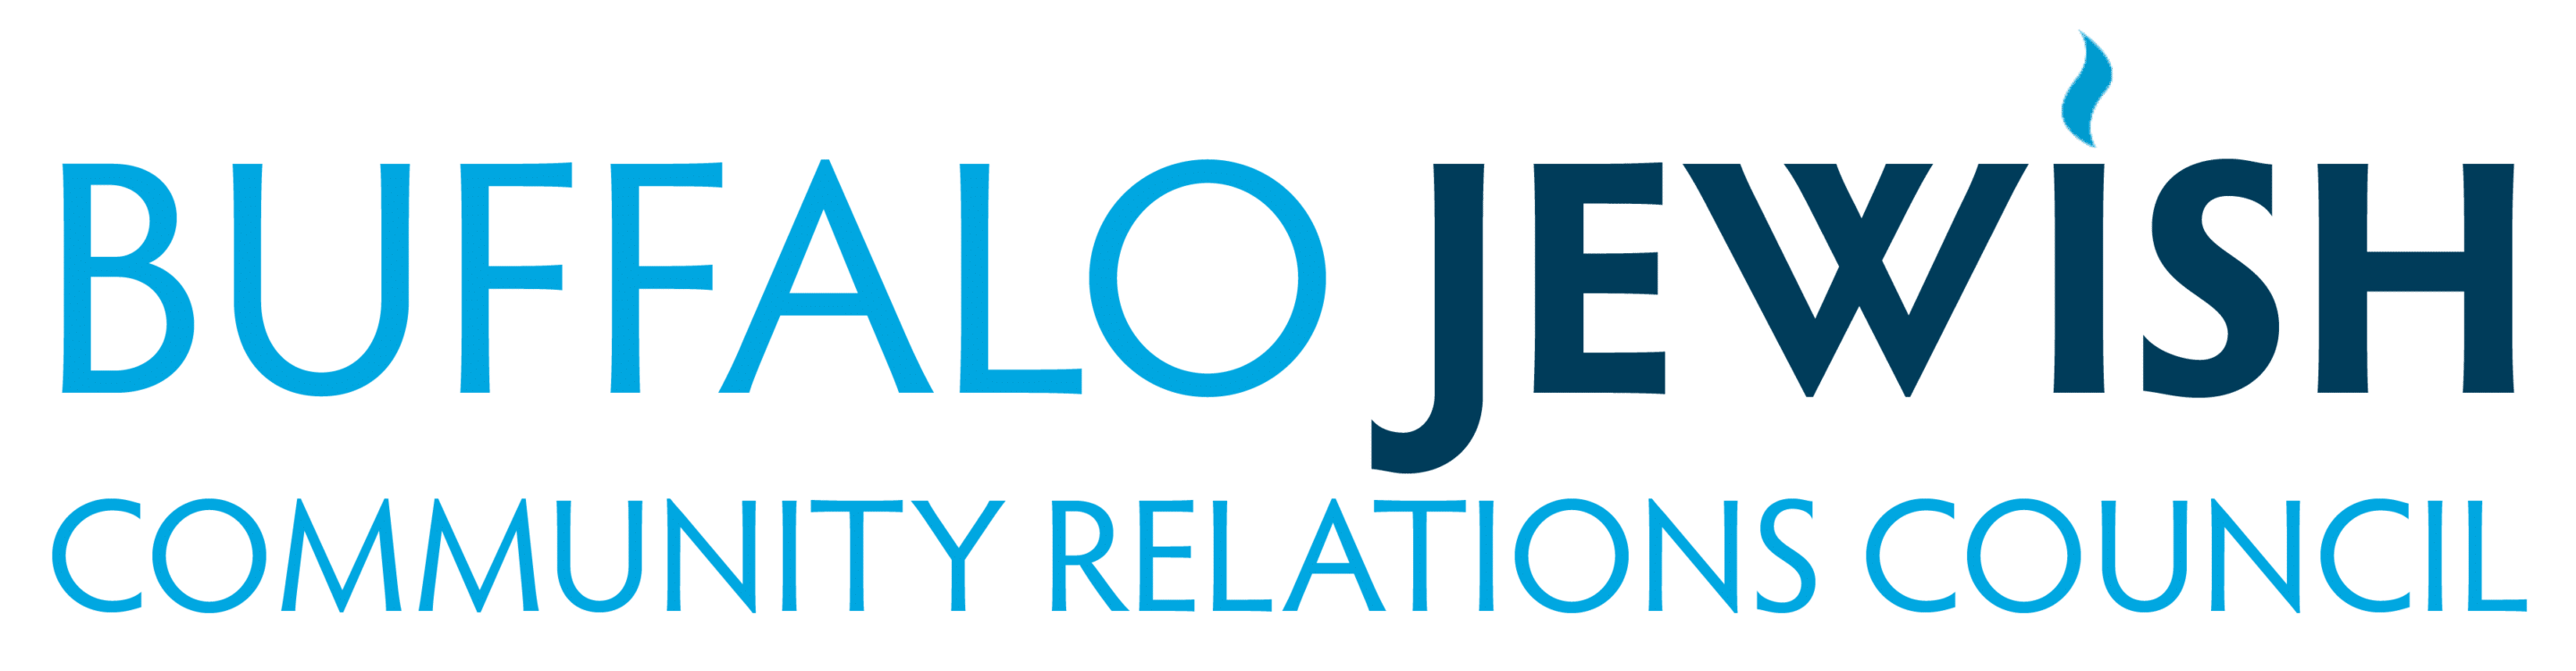 Antisemitism and Hate - Buffalo JCRC Logo 1